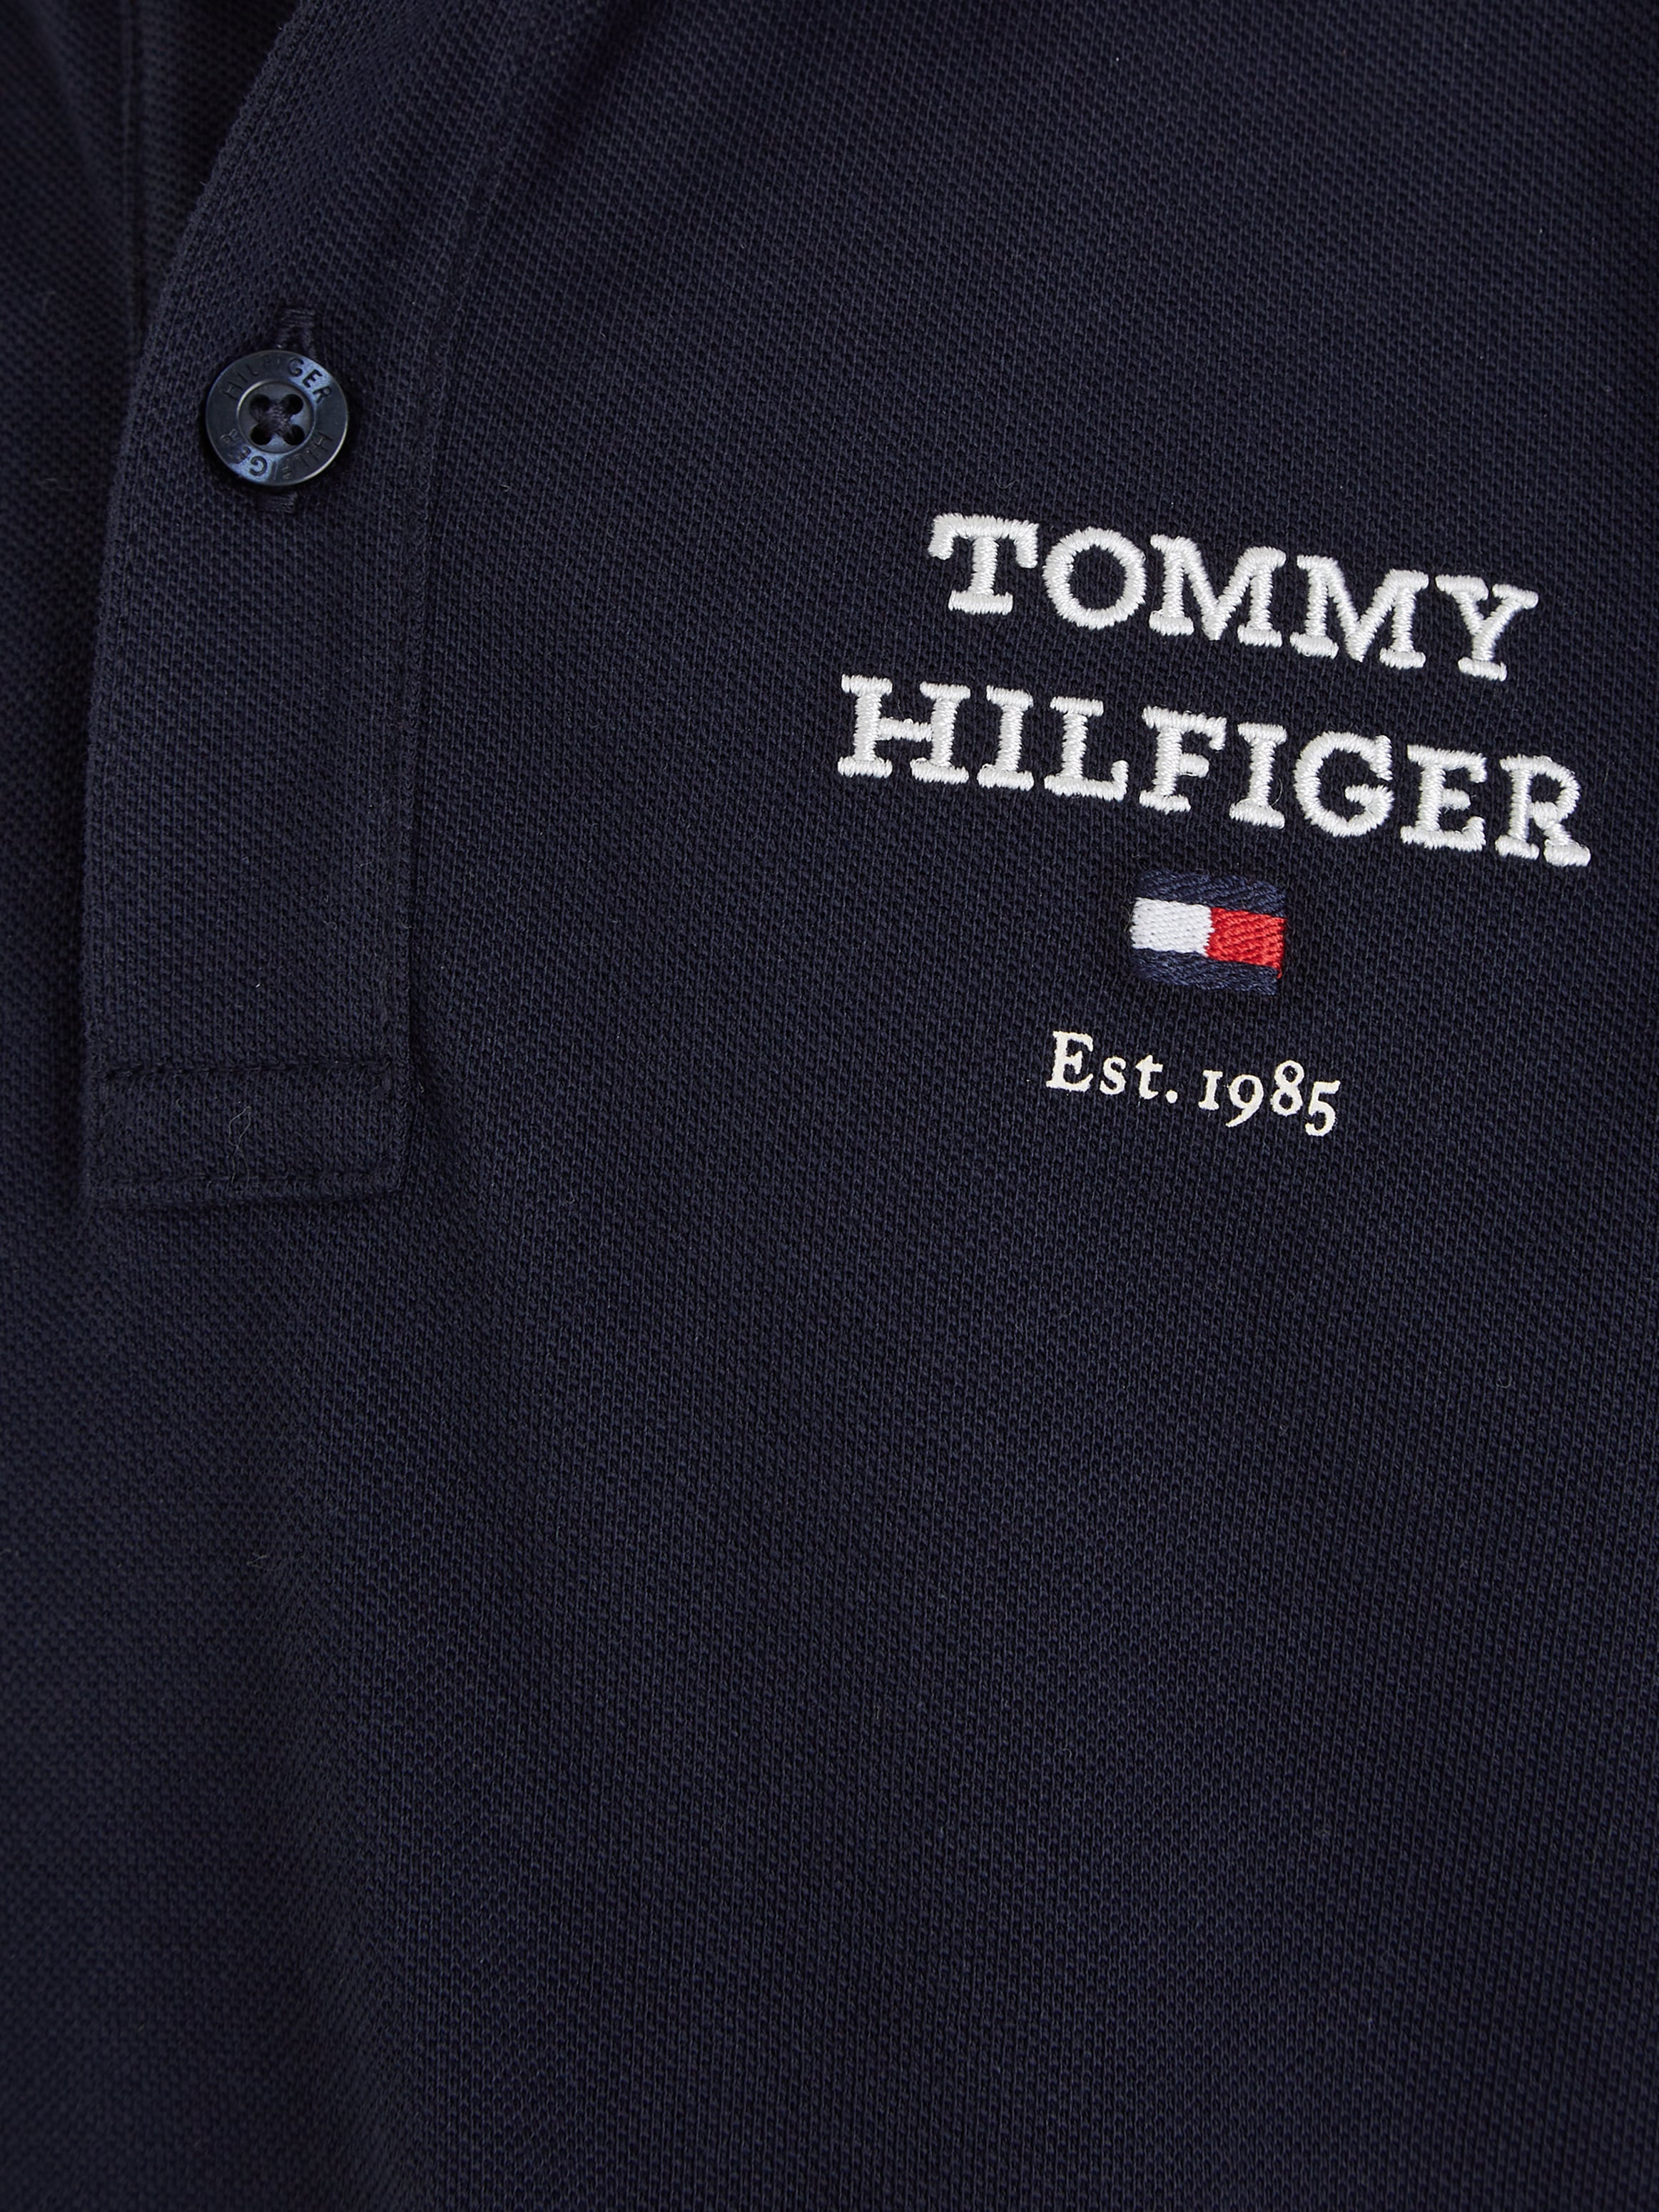 »TH kaufen mit Poloshirt Hilfiger Tommy BAUR LOGO POLO S/S«, | Logostickerei